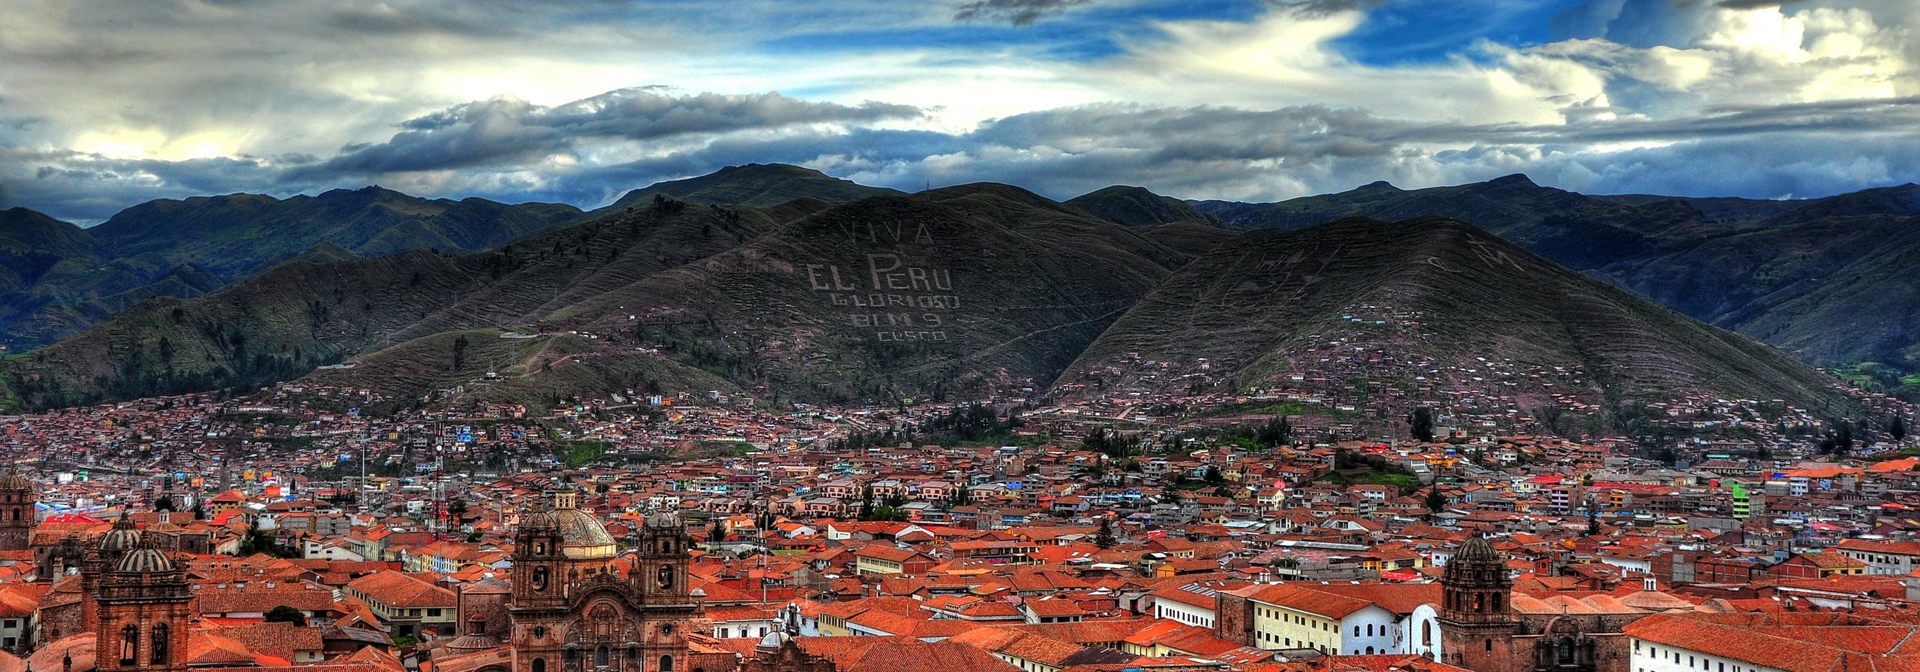 peru - cuzco_santo domingo kirke_10